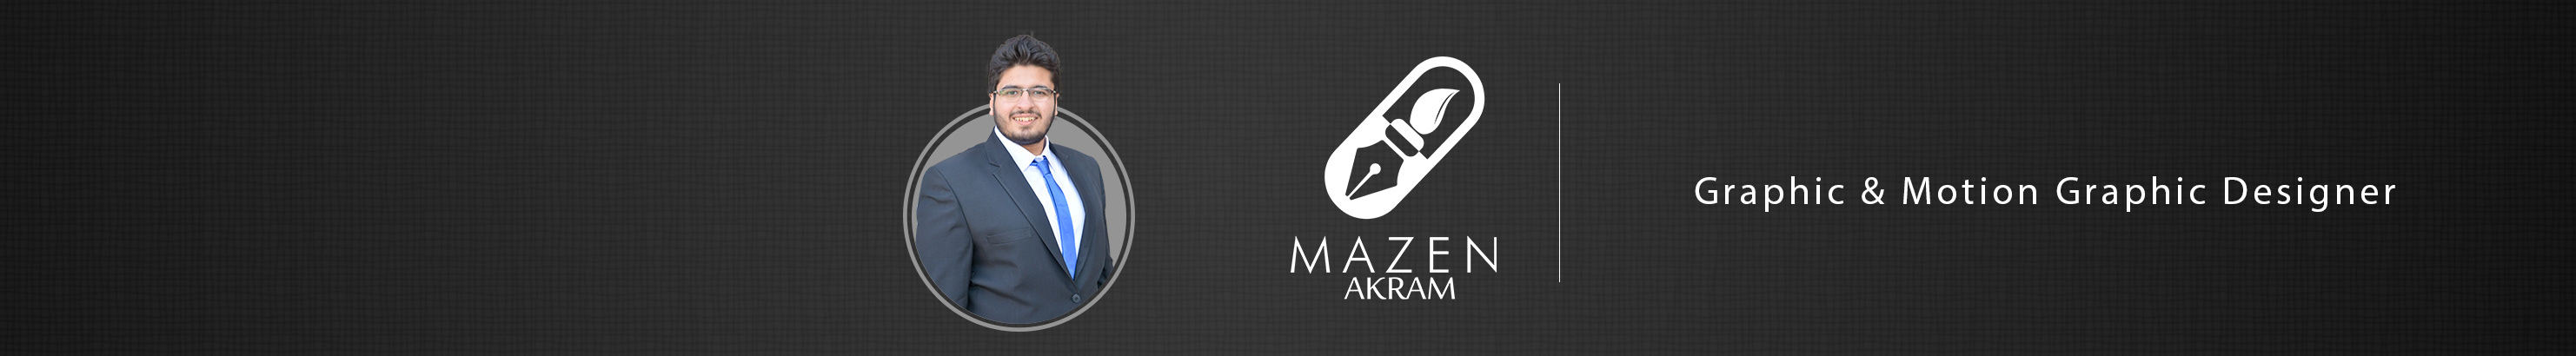 Mazen Akram のプロファイルバナー